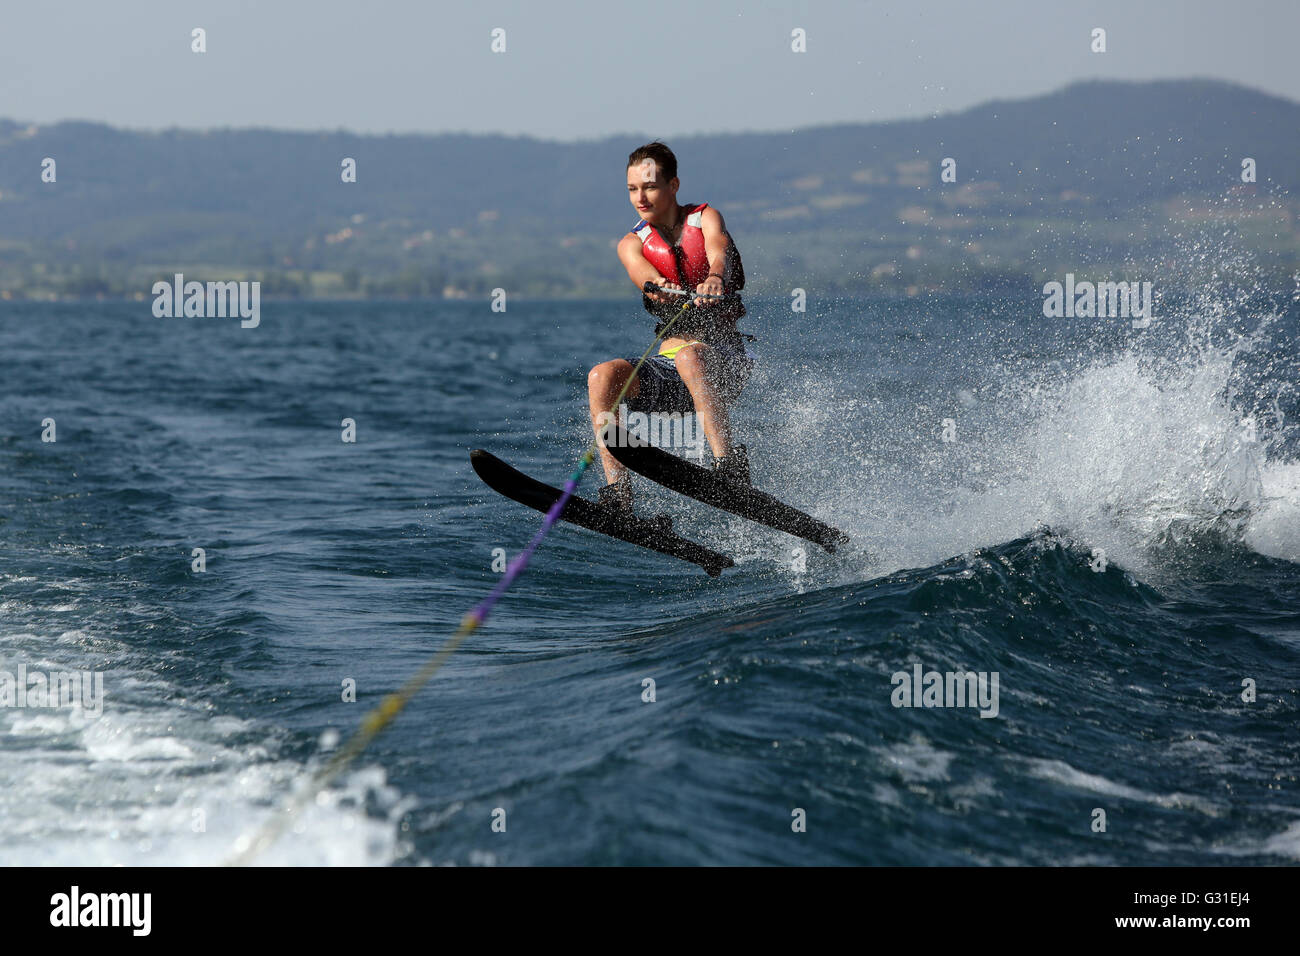 Capodimonte, Italia, el niño corriendo el esquí acuático en el lago de Bolsena Foto de stock